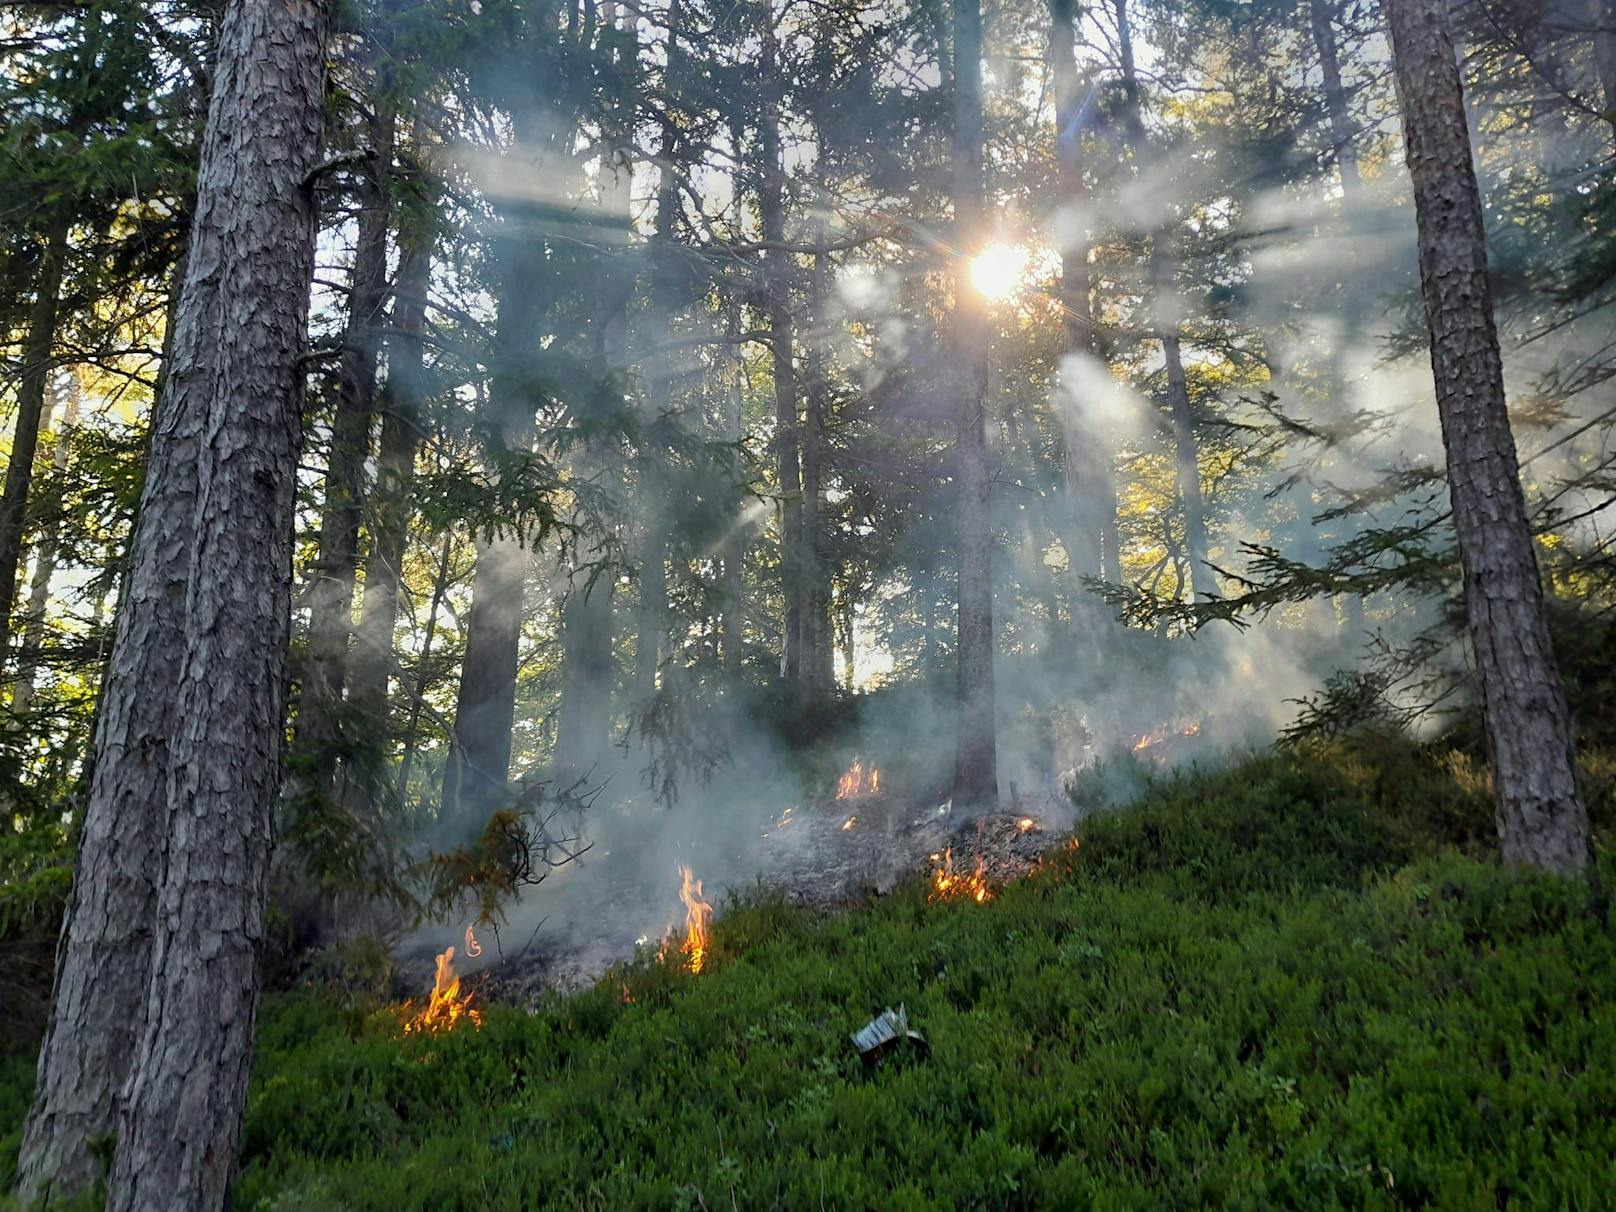 Camper grillen Essen, lösen Waldbrand am Semmering aus